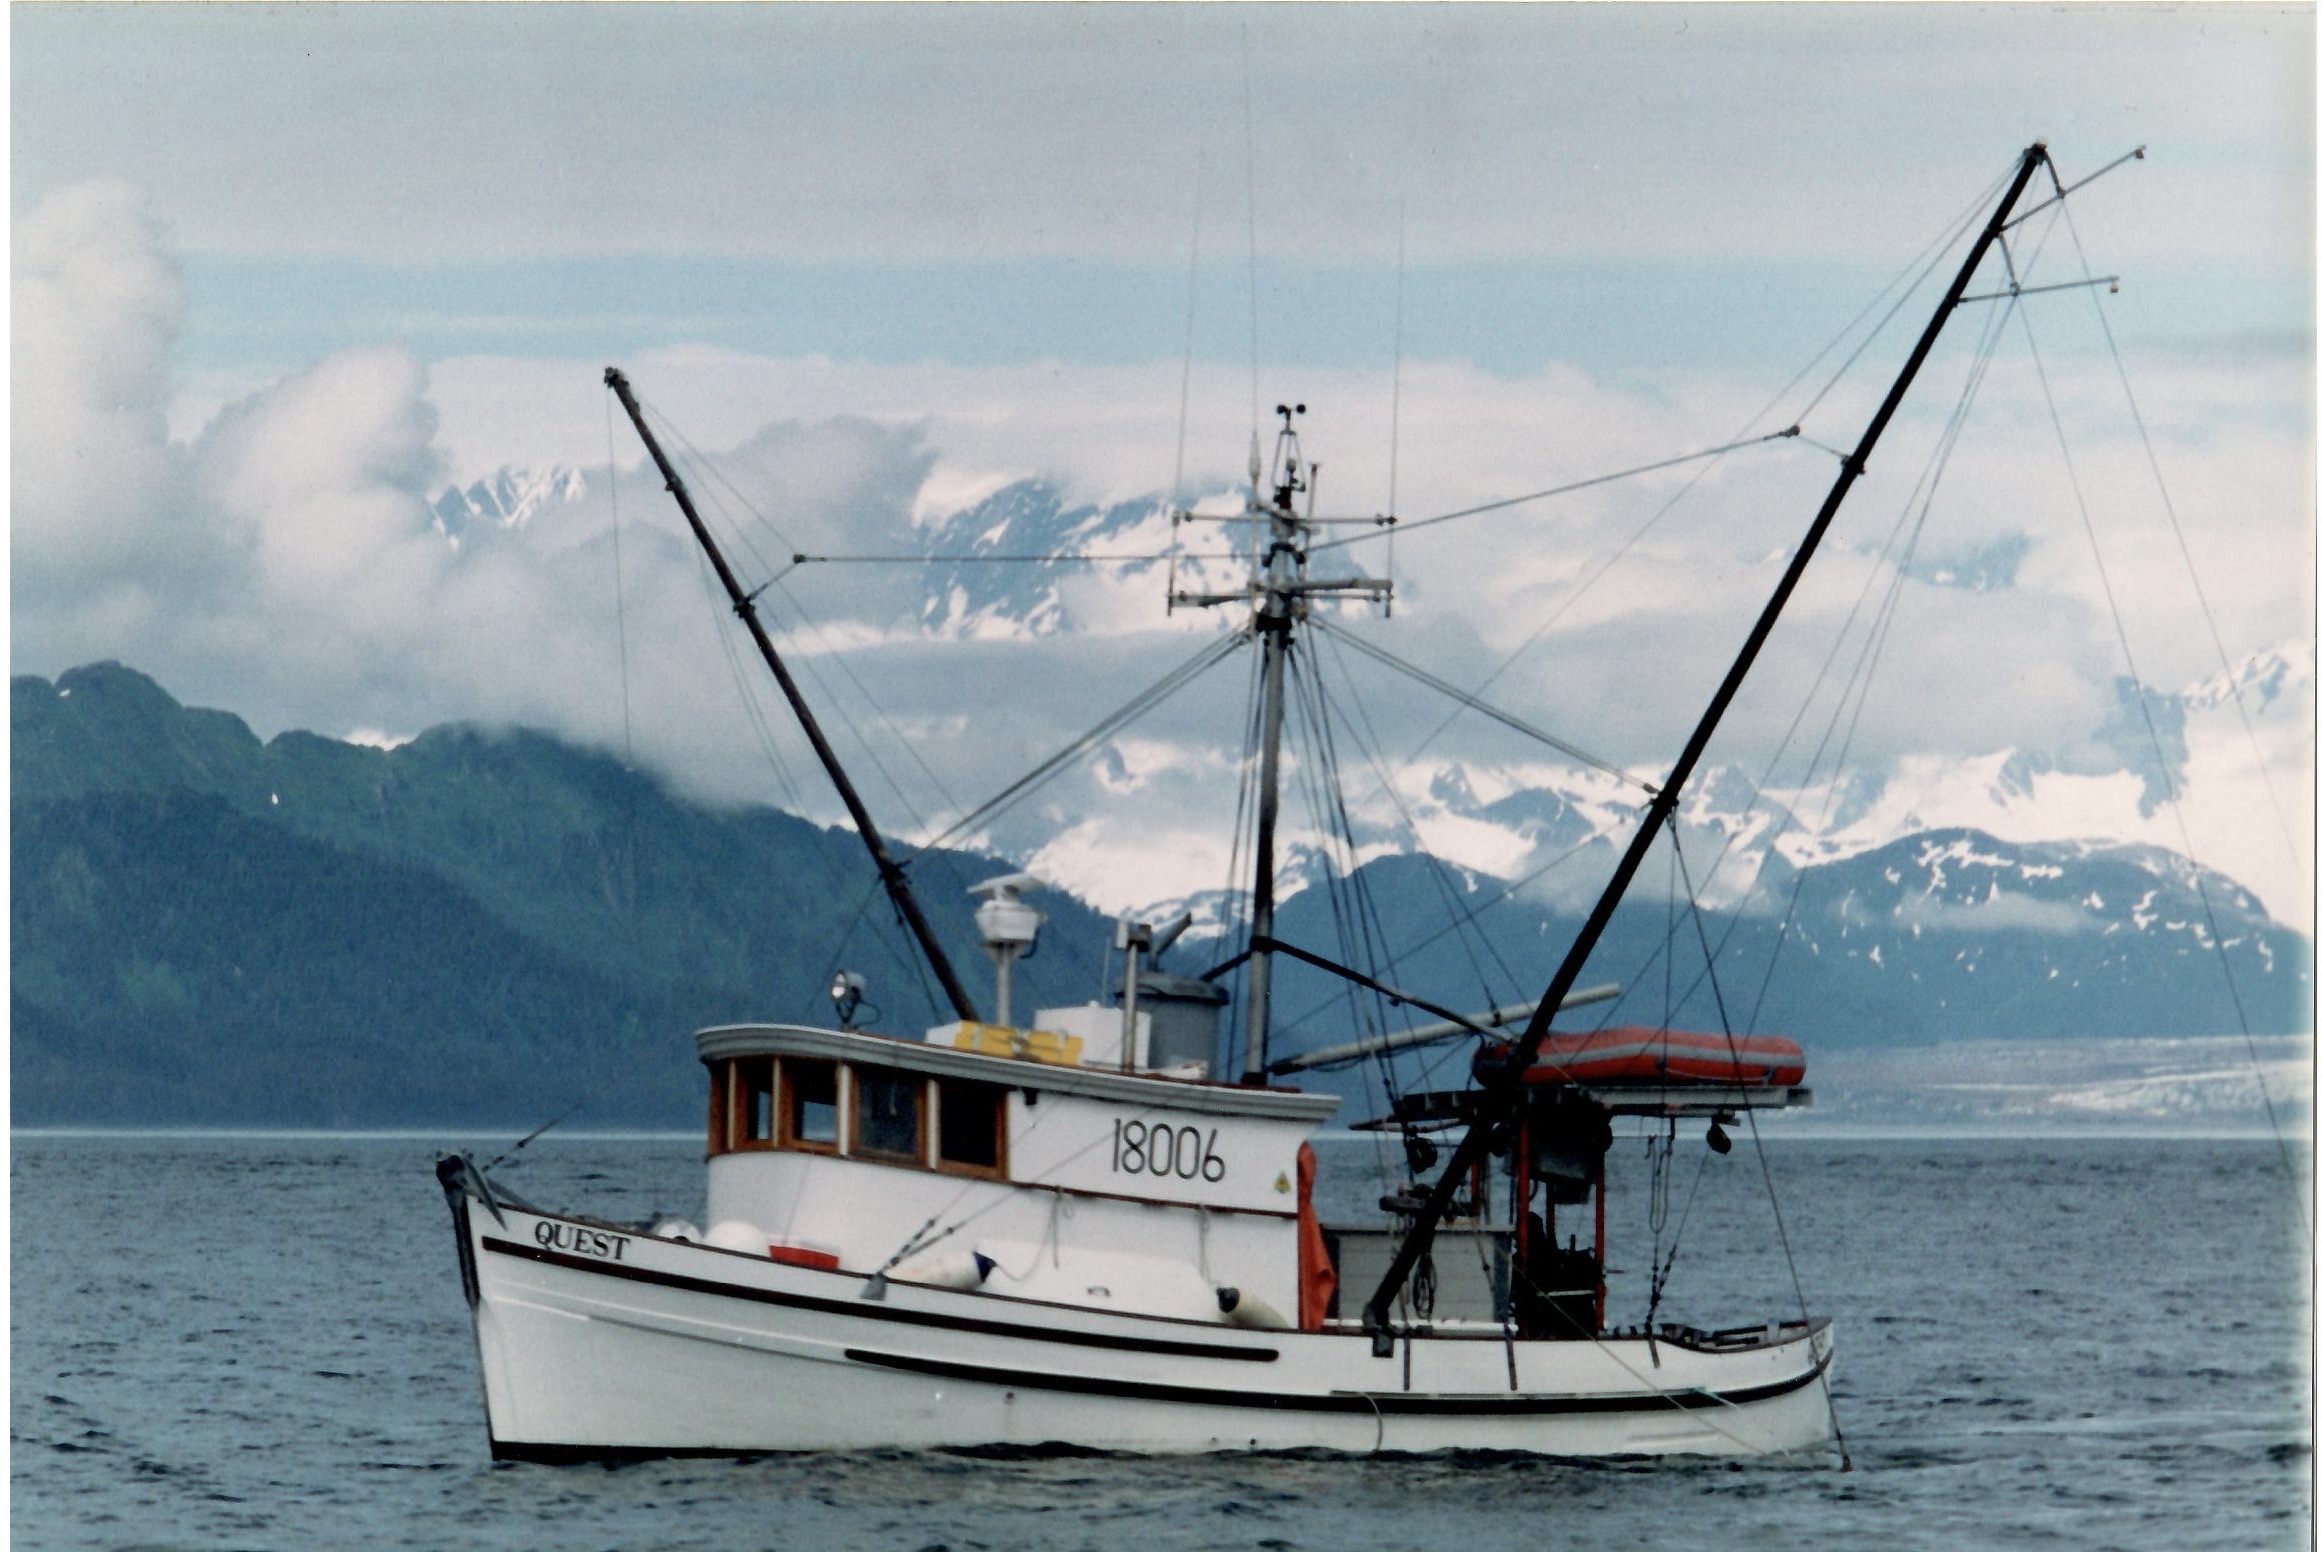 NPI boardmember Diane Jones' fishing boat